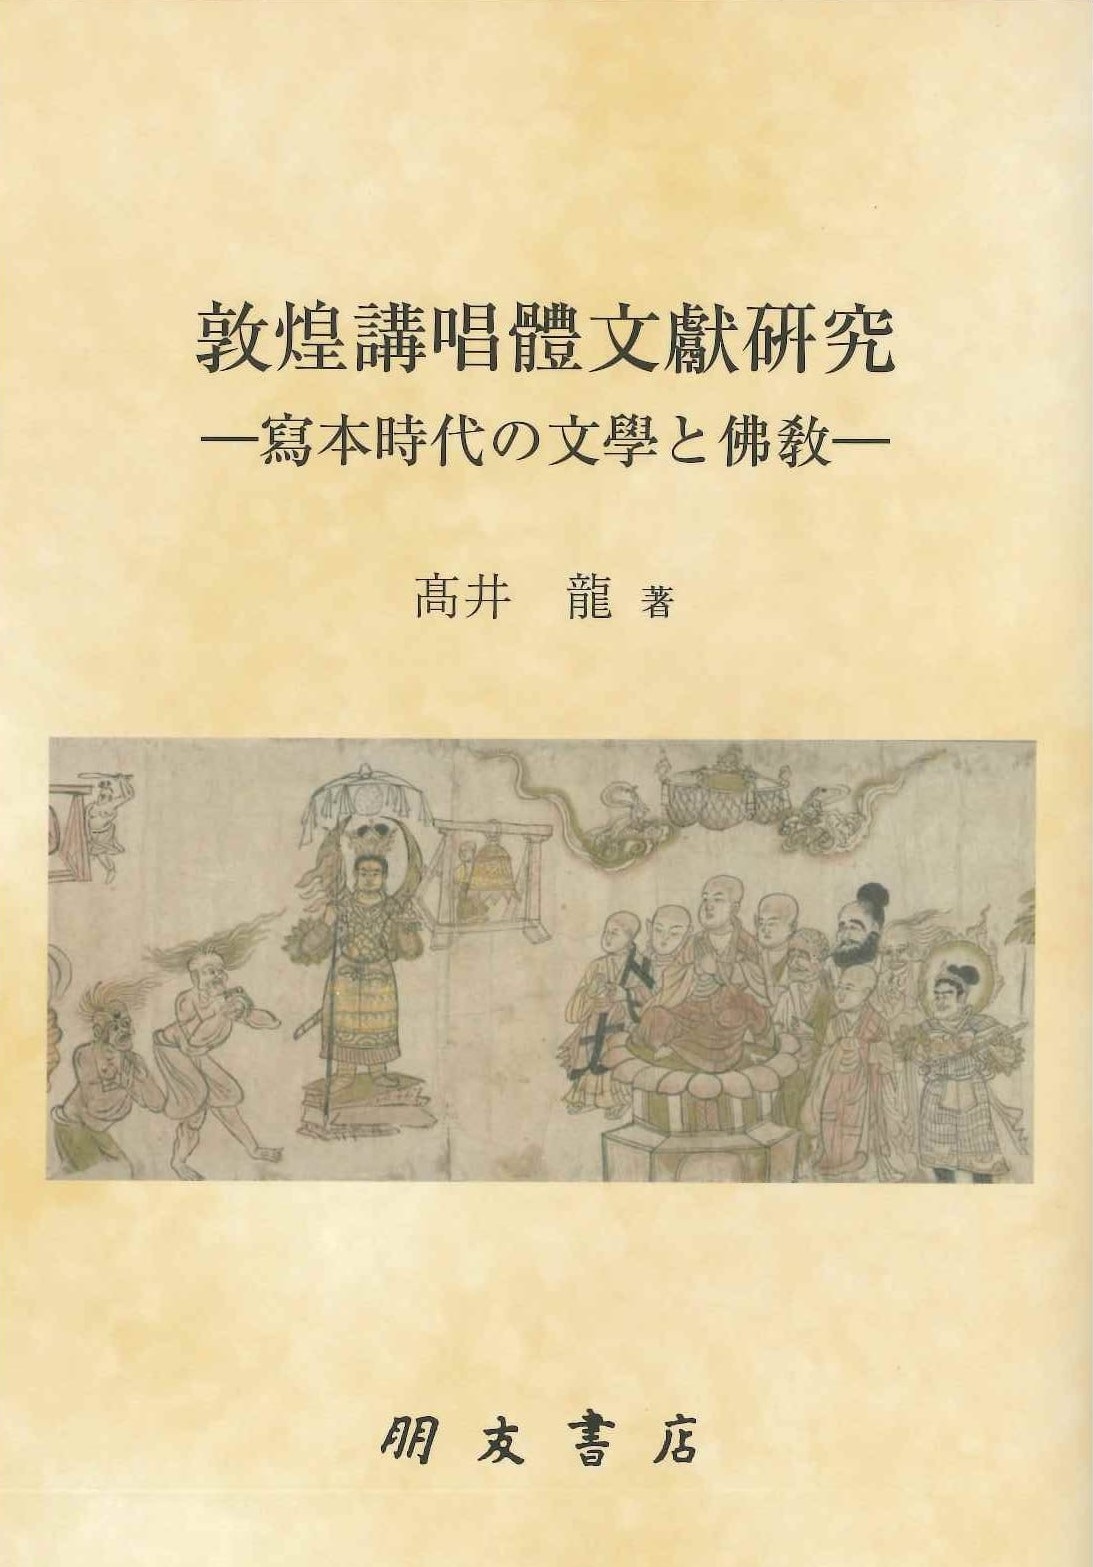 敦煌講唱体文献研究 ―写本時代の文学と仏教―